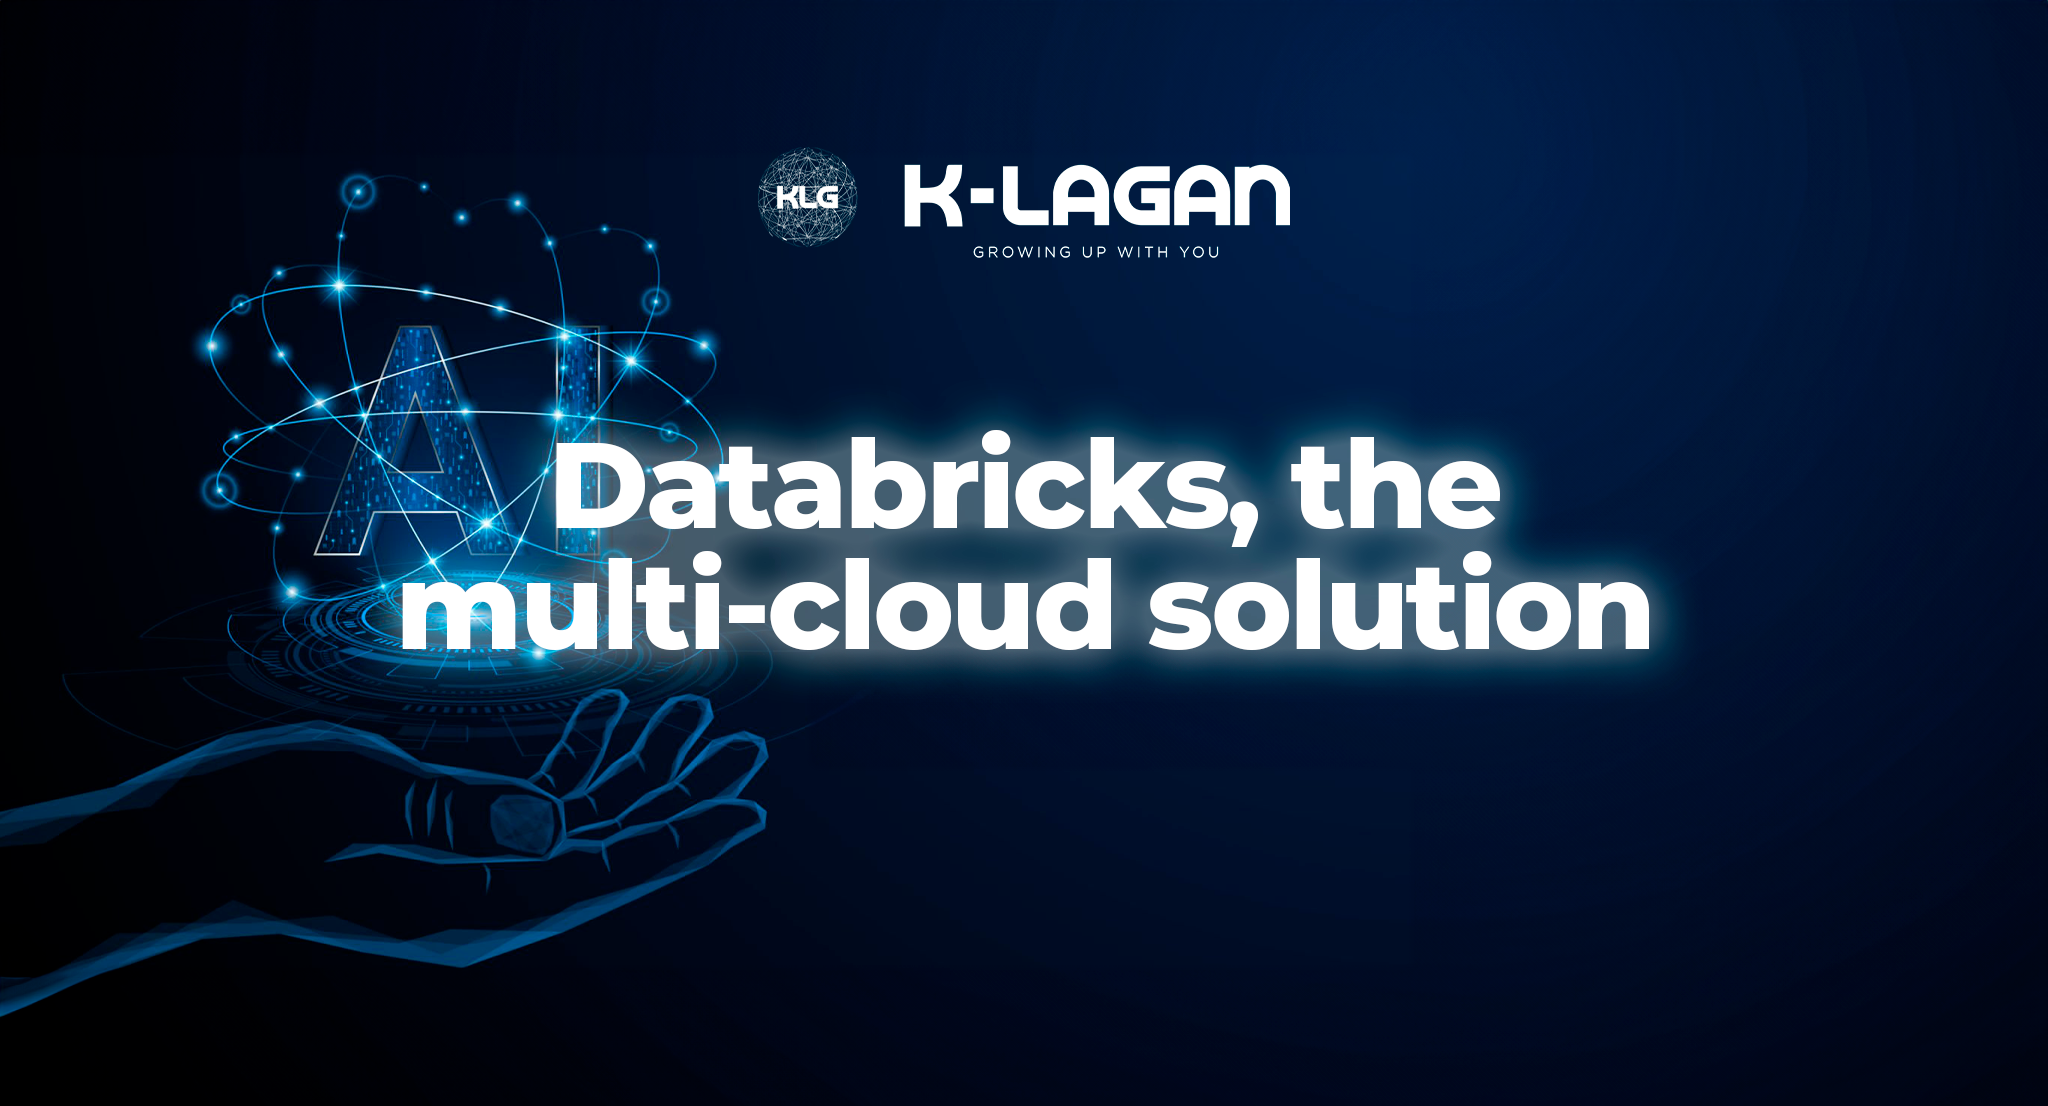 Databricks: la solución multi-nube para maximizar el uso de sus datos para la IA y el aprendizaje automático